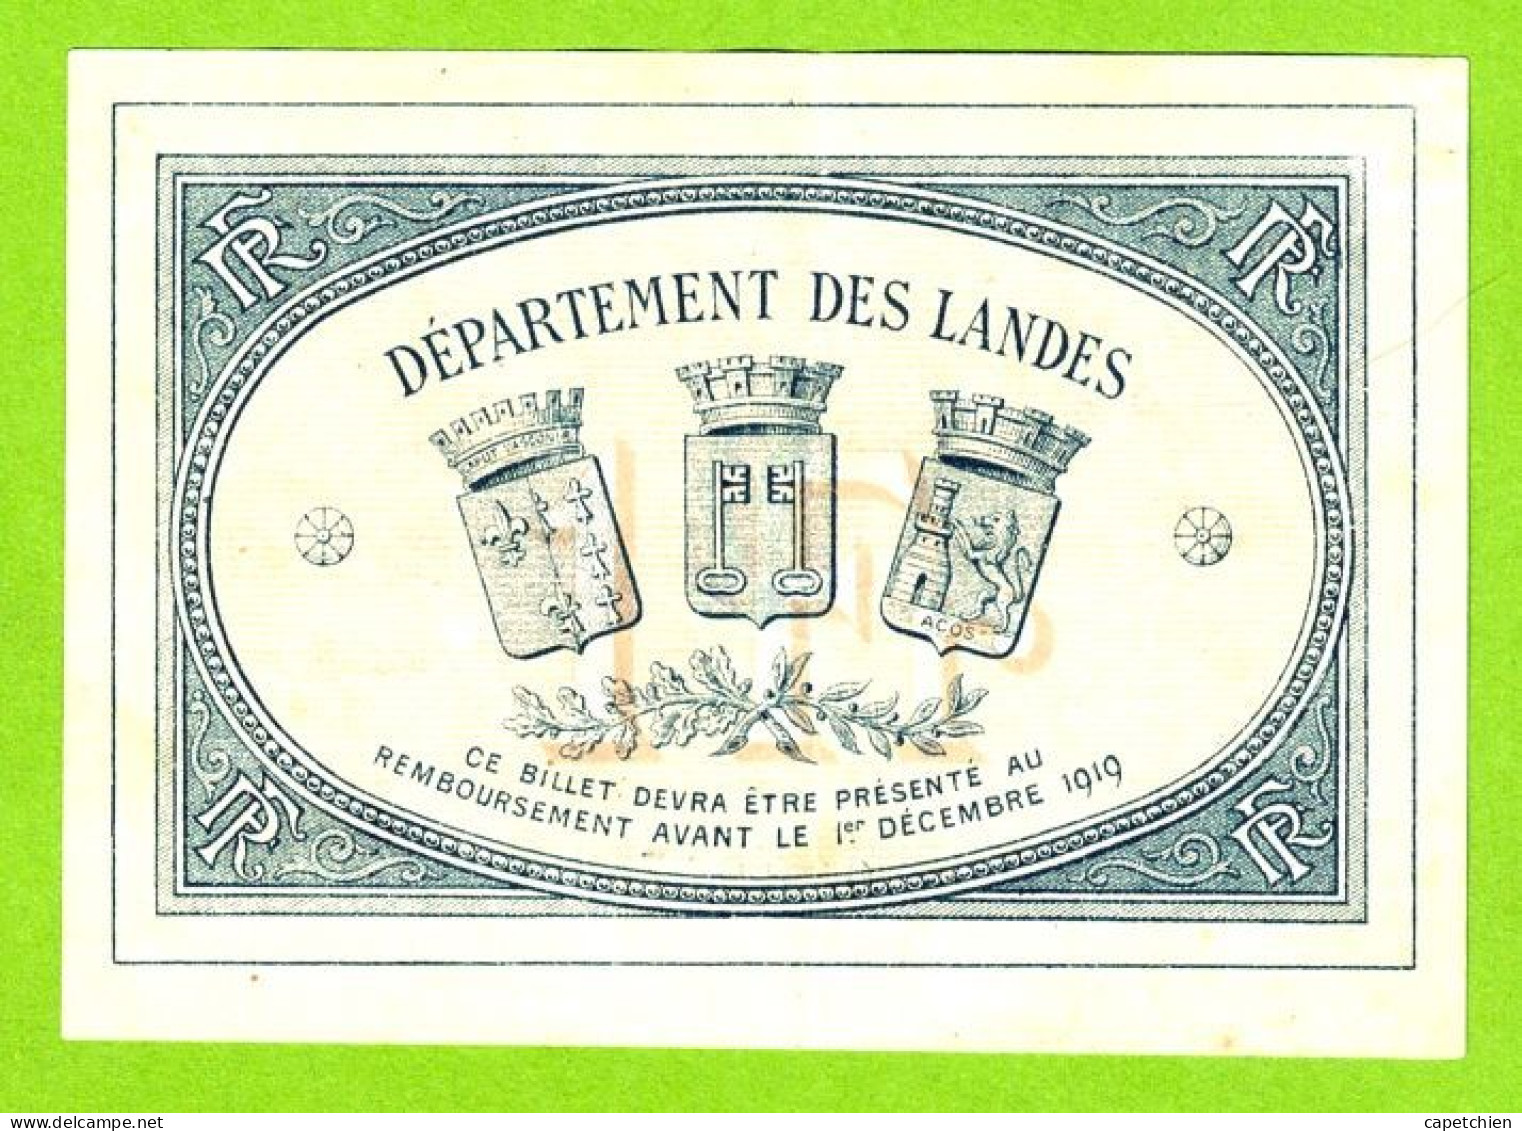 FRANCE / CHAMBRE De COMMERCE / MONT DE MARSAN / 1 FRANC / 1er DECEMBRE 1914 / 008917 / SERIE Ttt - Chamber Of Commerce